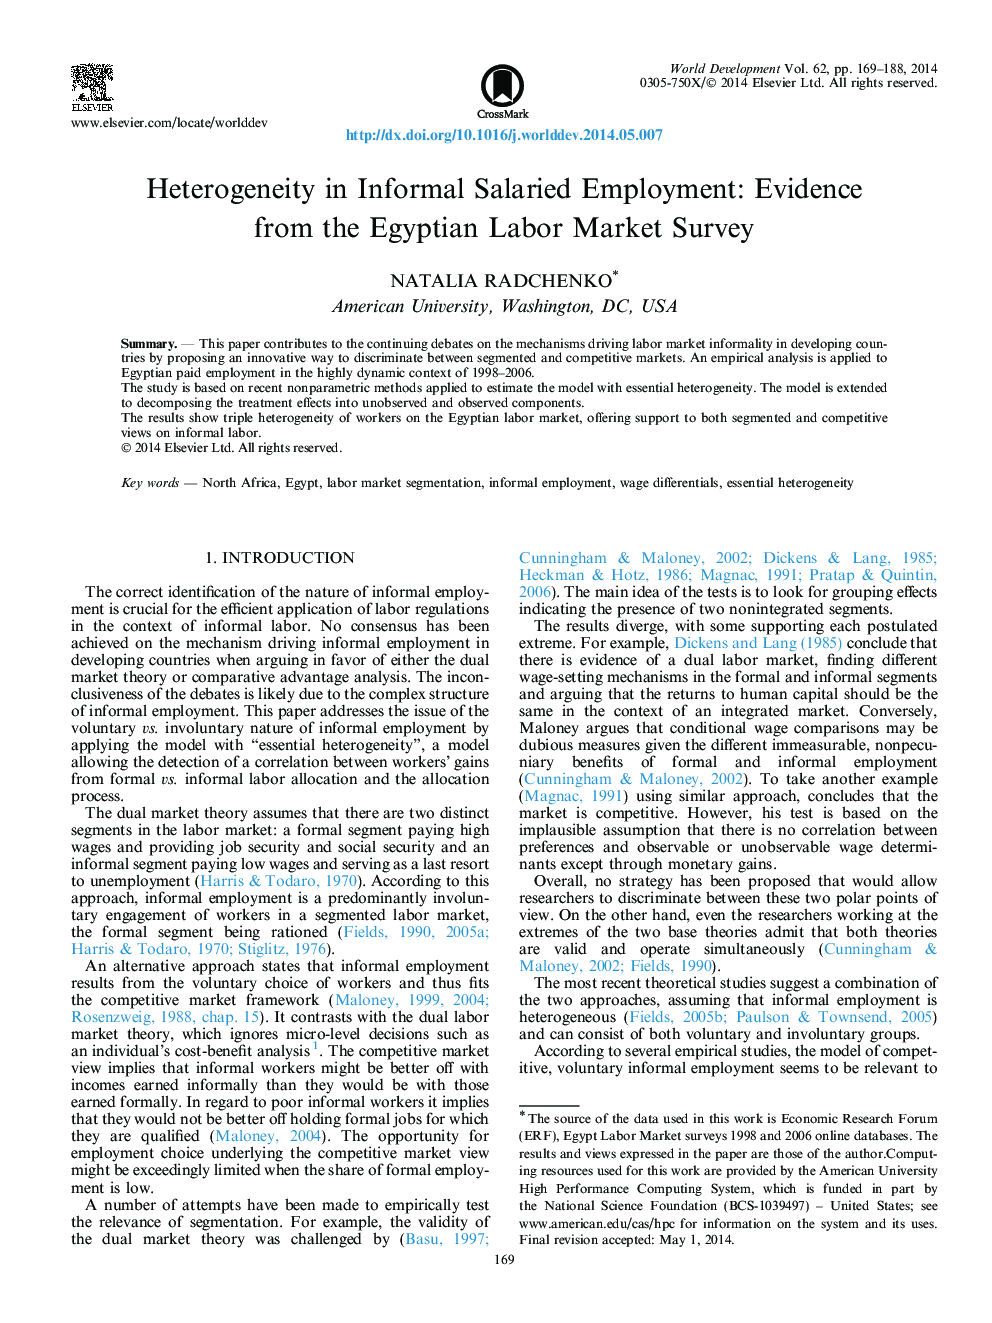 عدم همبستگی در استخدام غیررسمی استخدامی: شواهد از نظرسنجی بازار کار مصر